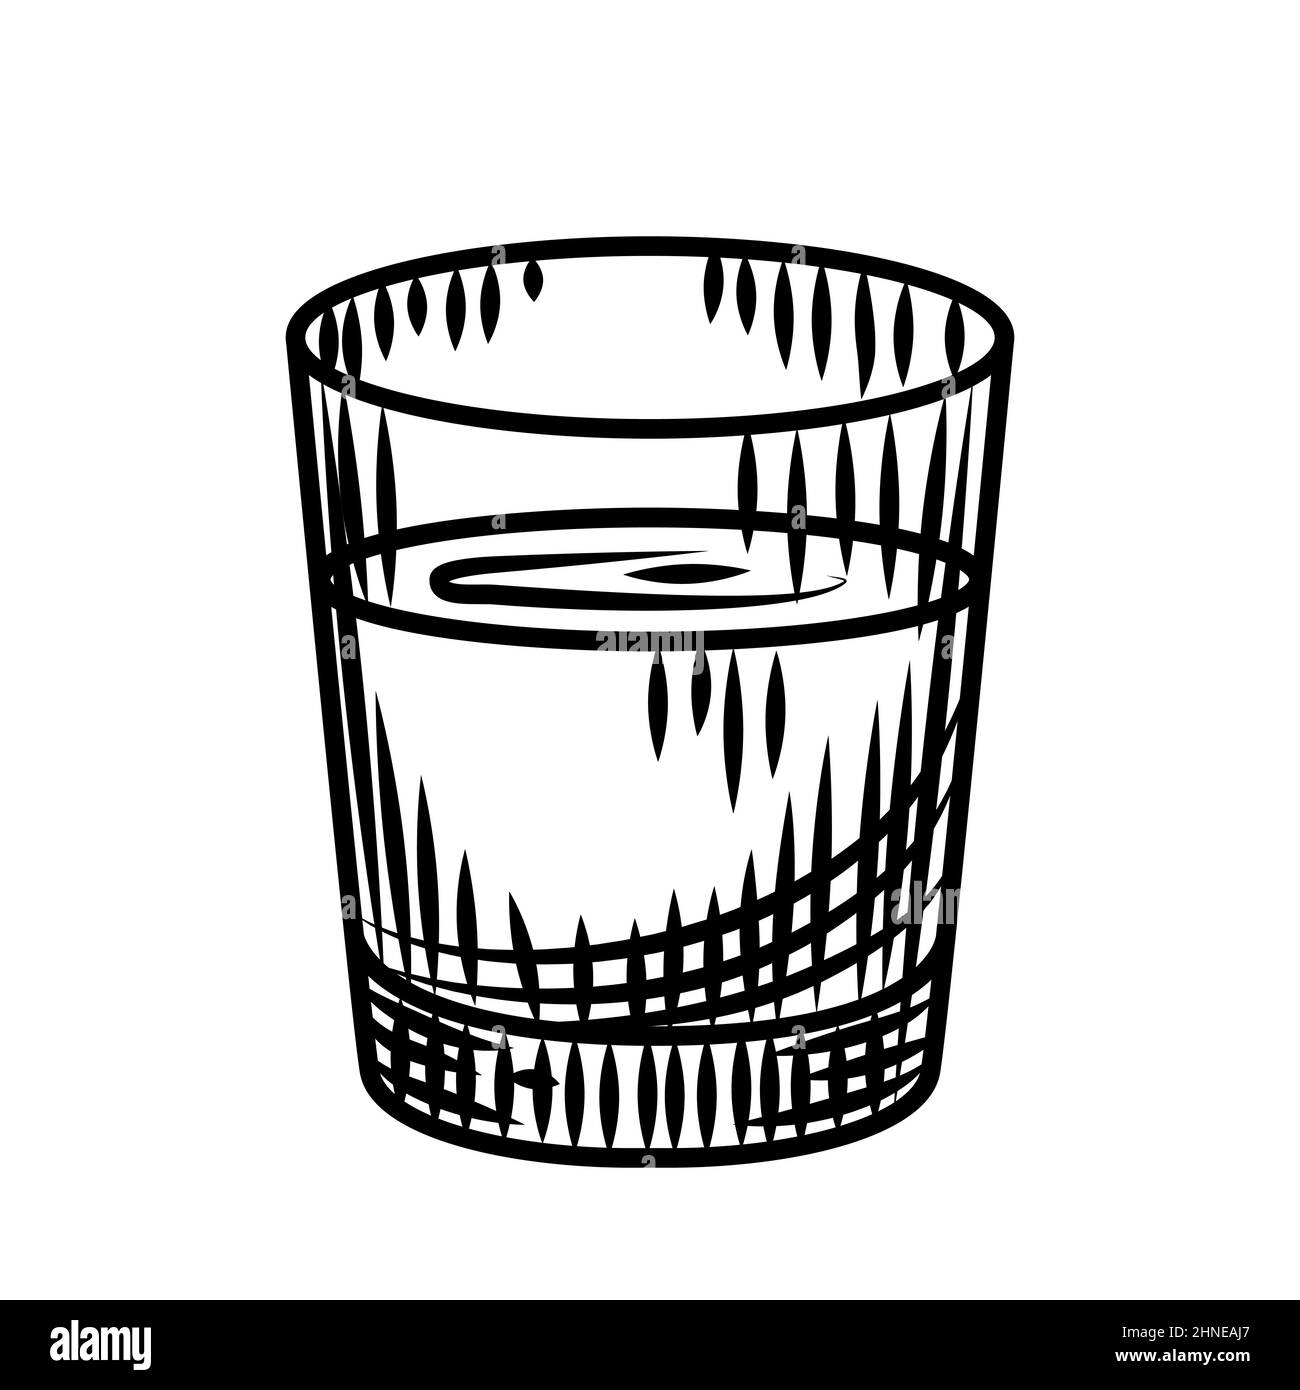 https://c8.alamy.com/comp/2HNEAJ7/doodle-vodka-shot-isolated-on-white-background-full-shot-glass-of-alcohol-bar-menu-design-transparent-drink-glassvintage-engraved-style-vector-il-2HNEAJ7.jpg